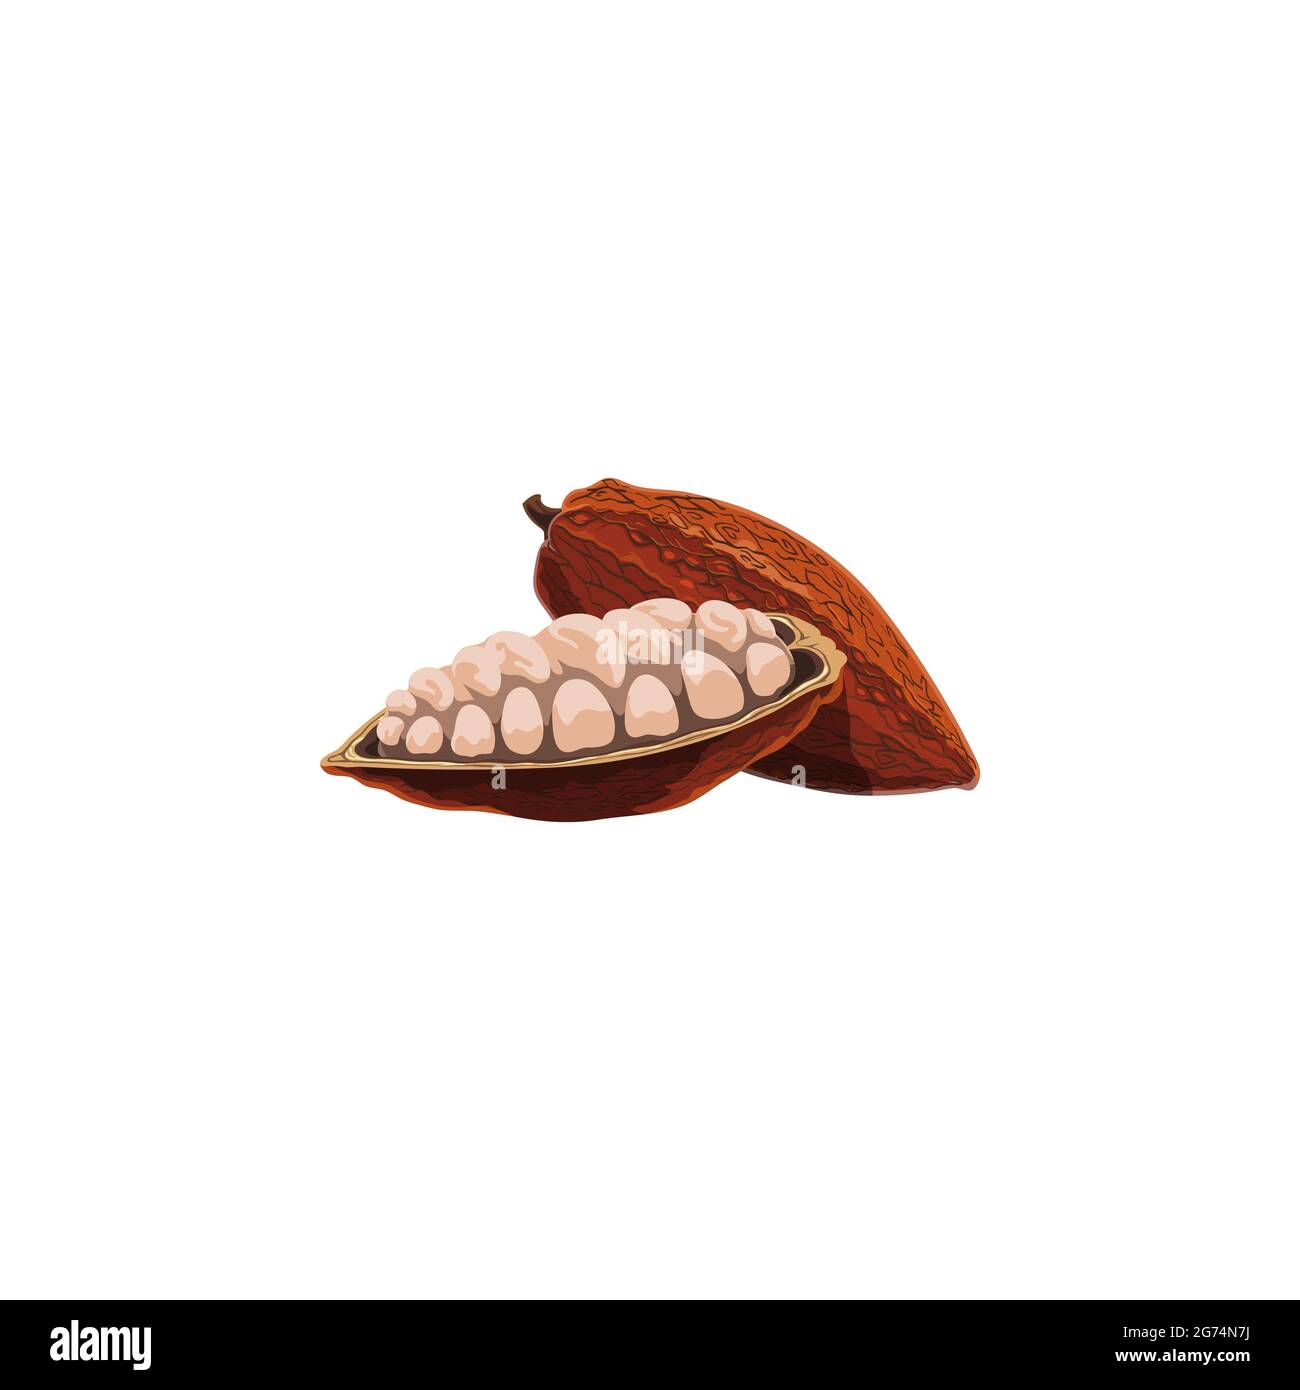 Kakaobohnenschote im Stadium des Reifens, getrocknete und fermentierte Samen von Brasilien oder Indonesien Obst isoliert Cartoon-Symbol. Vector Schokolade Kakaobohnen Superfood Stock Vektor